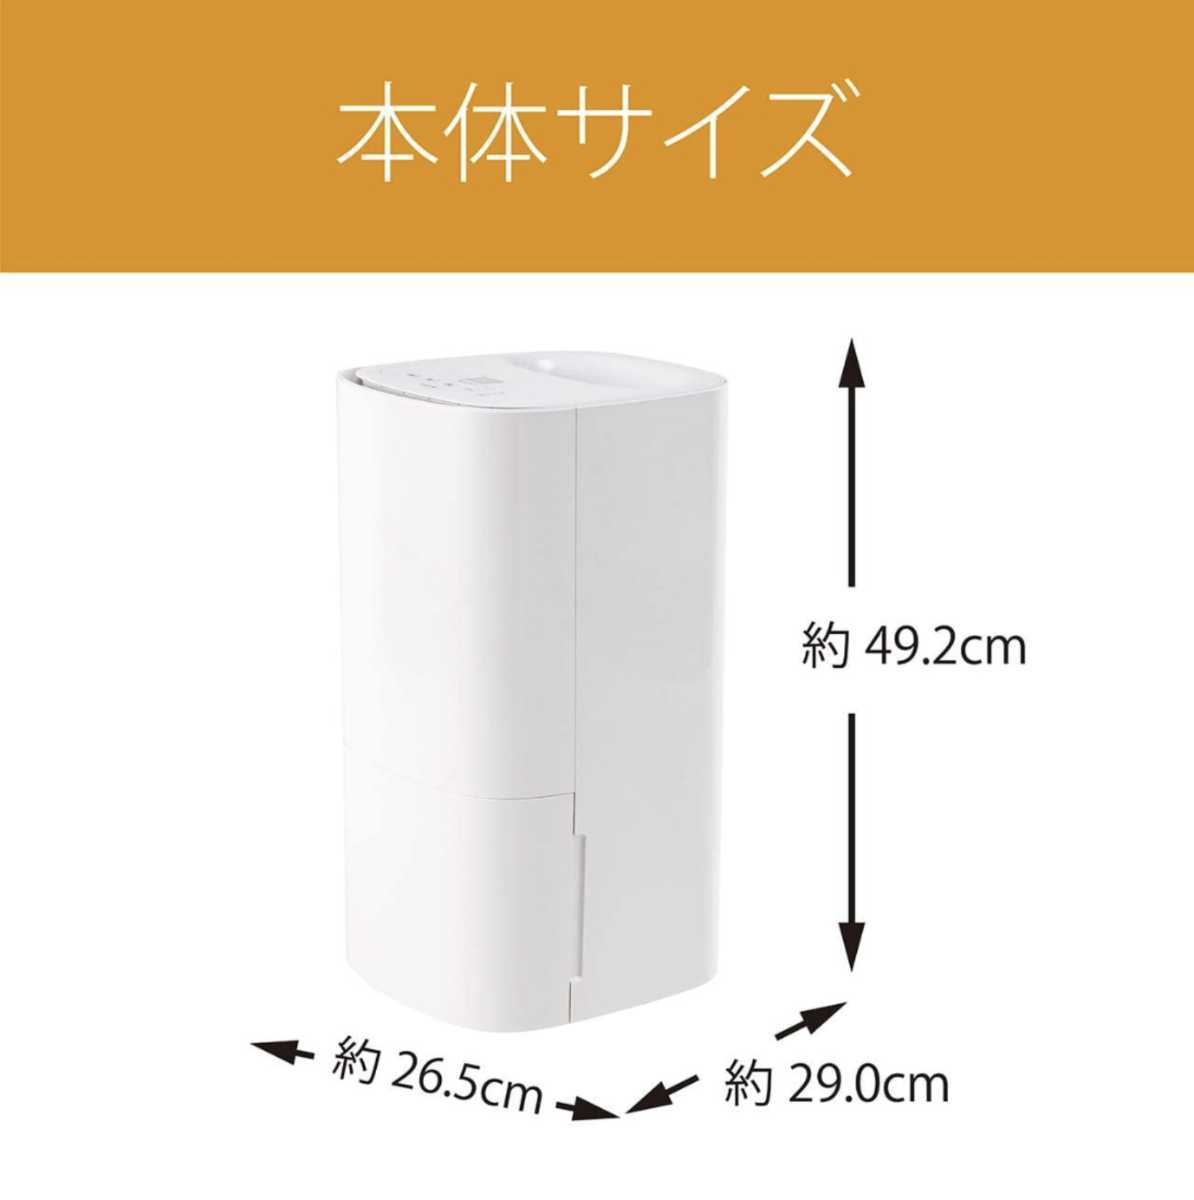 KOIZUMI 気化式加湿器KHM-5592/W 新品未使用品日本代购,买对网